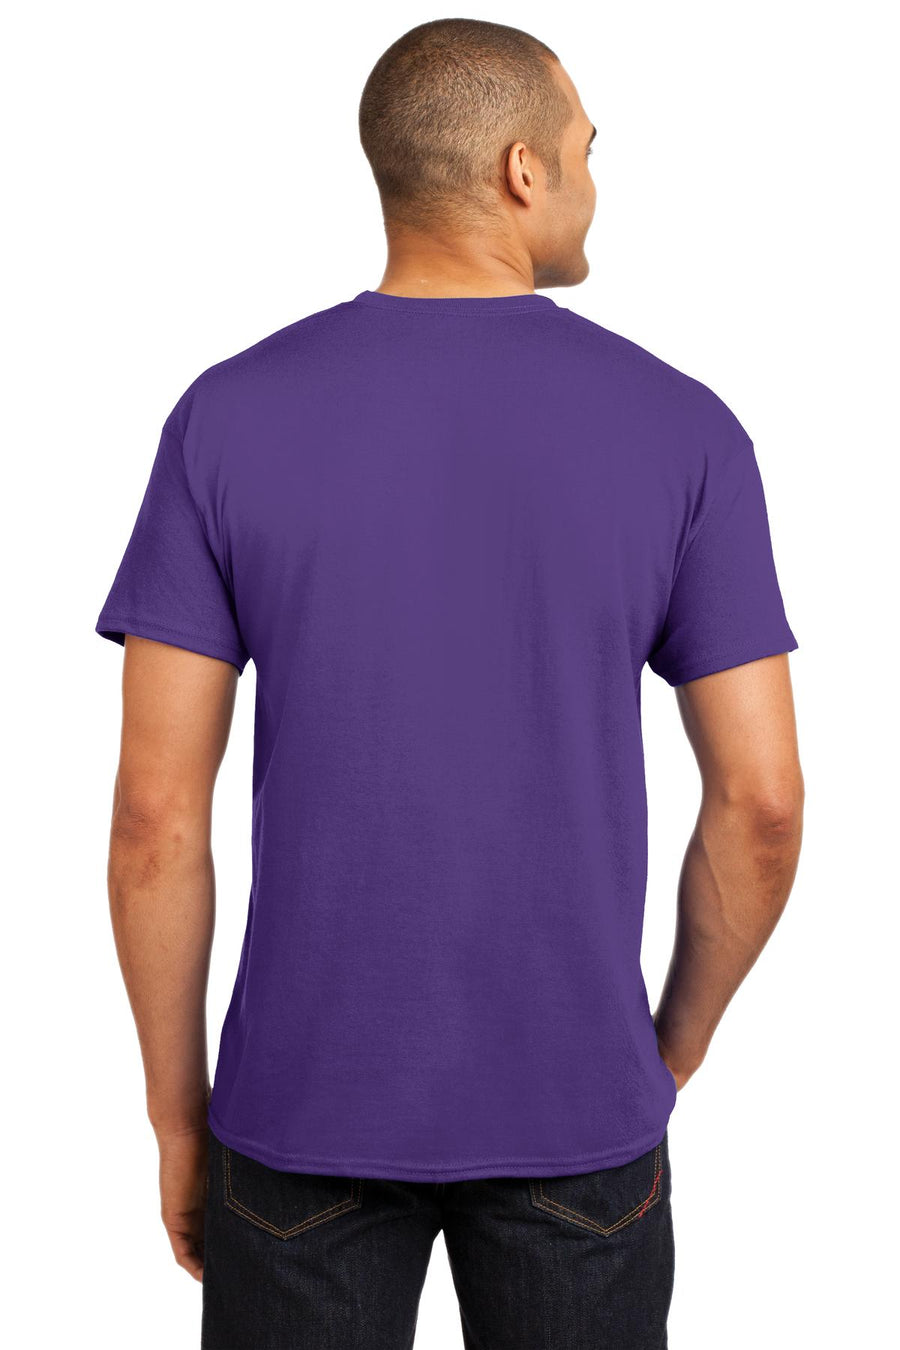 5170-Purple-back_model